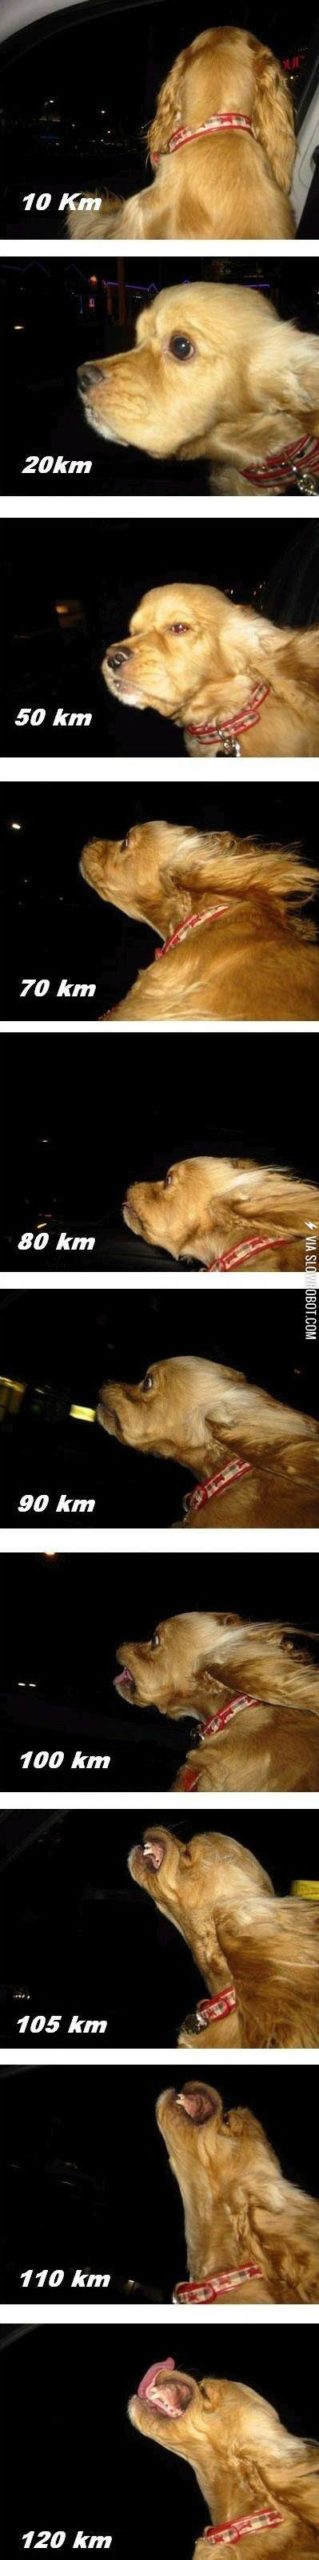 The+dog+speedometer.